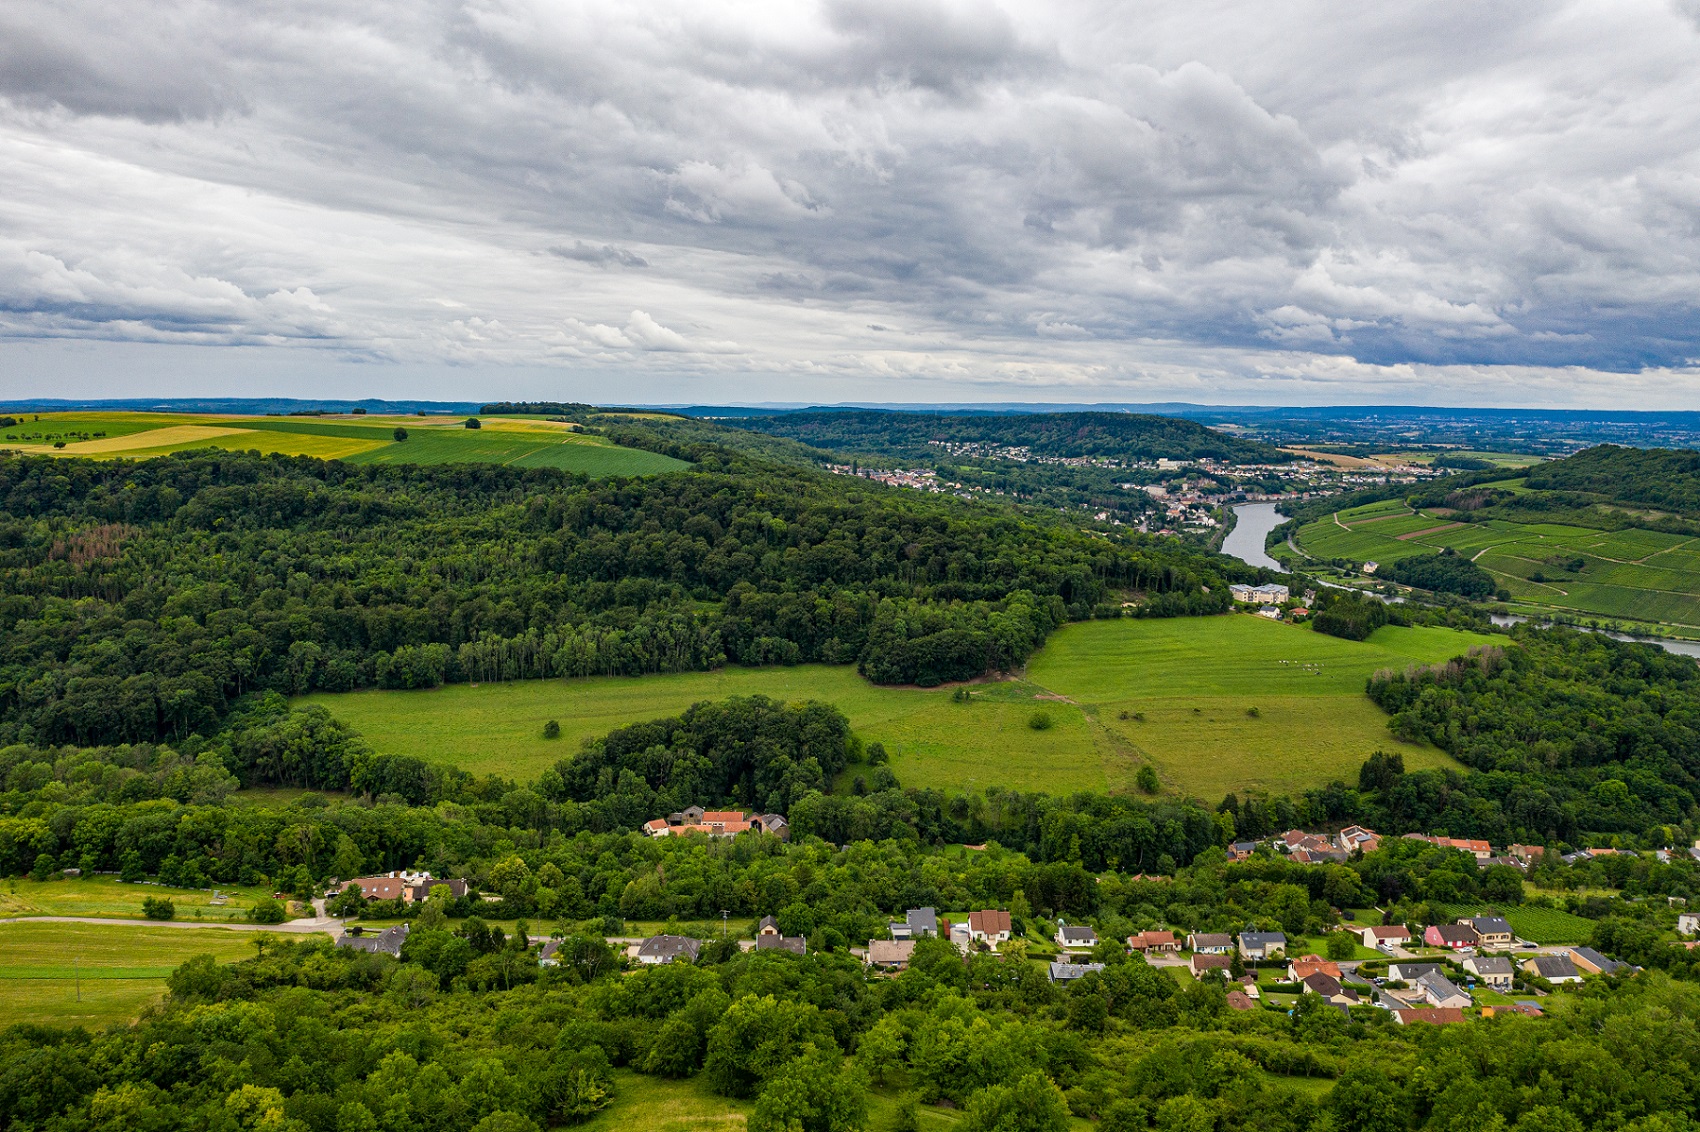 Photographie de paysage de la région de la Moselle. On peut voir des villages individuels dans la vallée. La rivière Moselle serpente en arrière-plan.